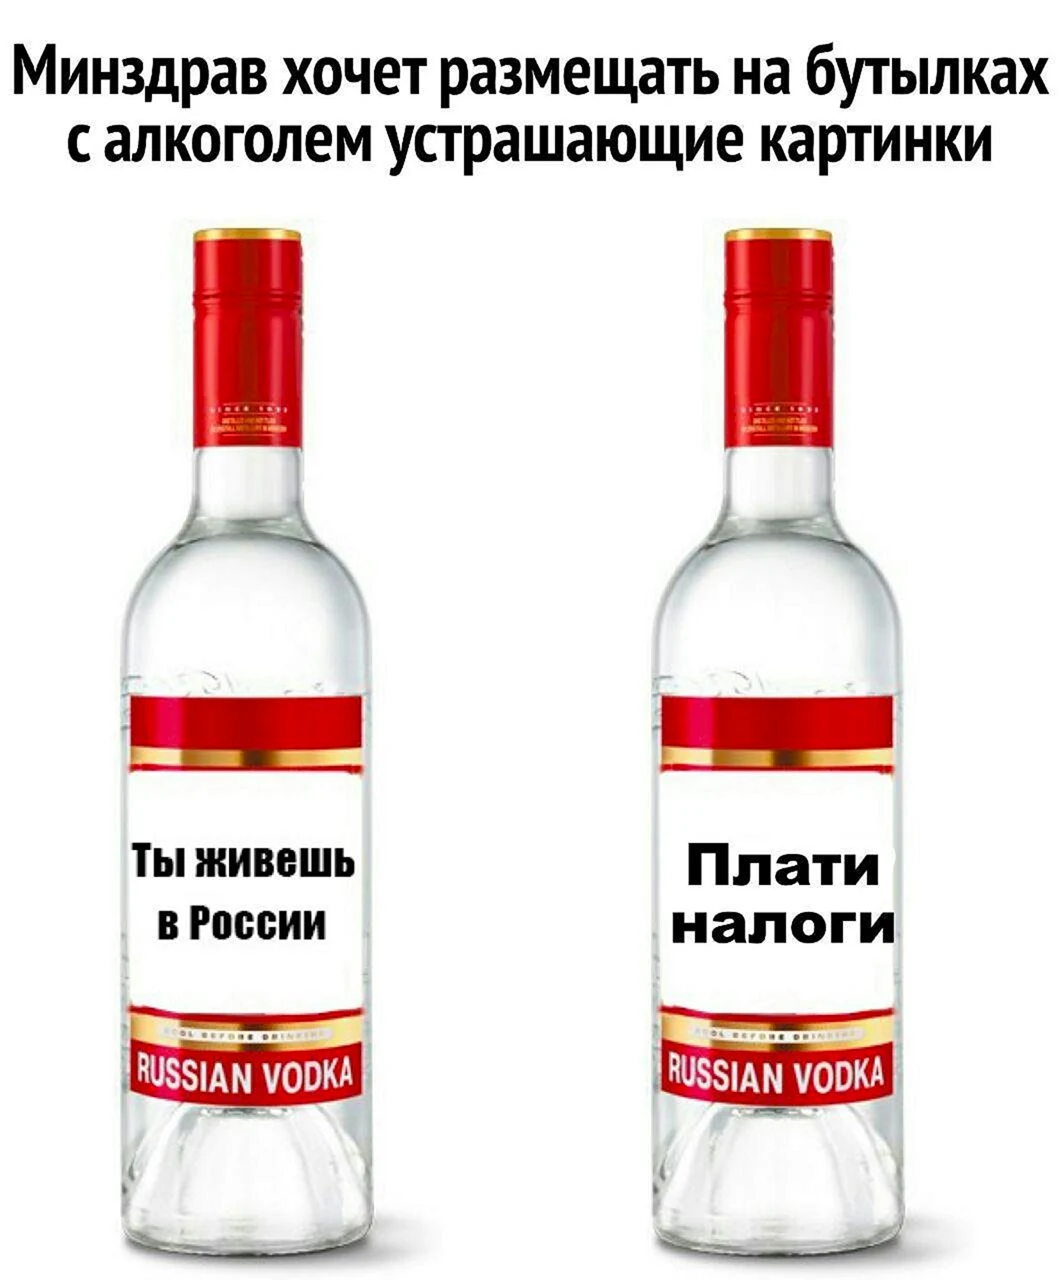 Приколы про алкоголь